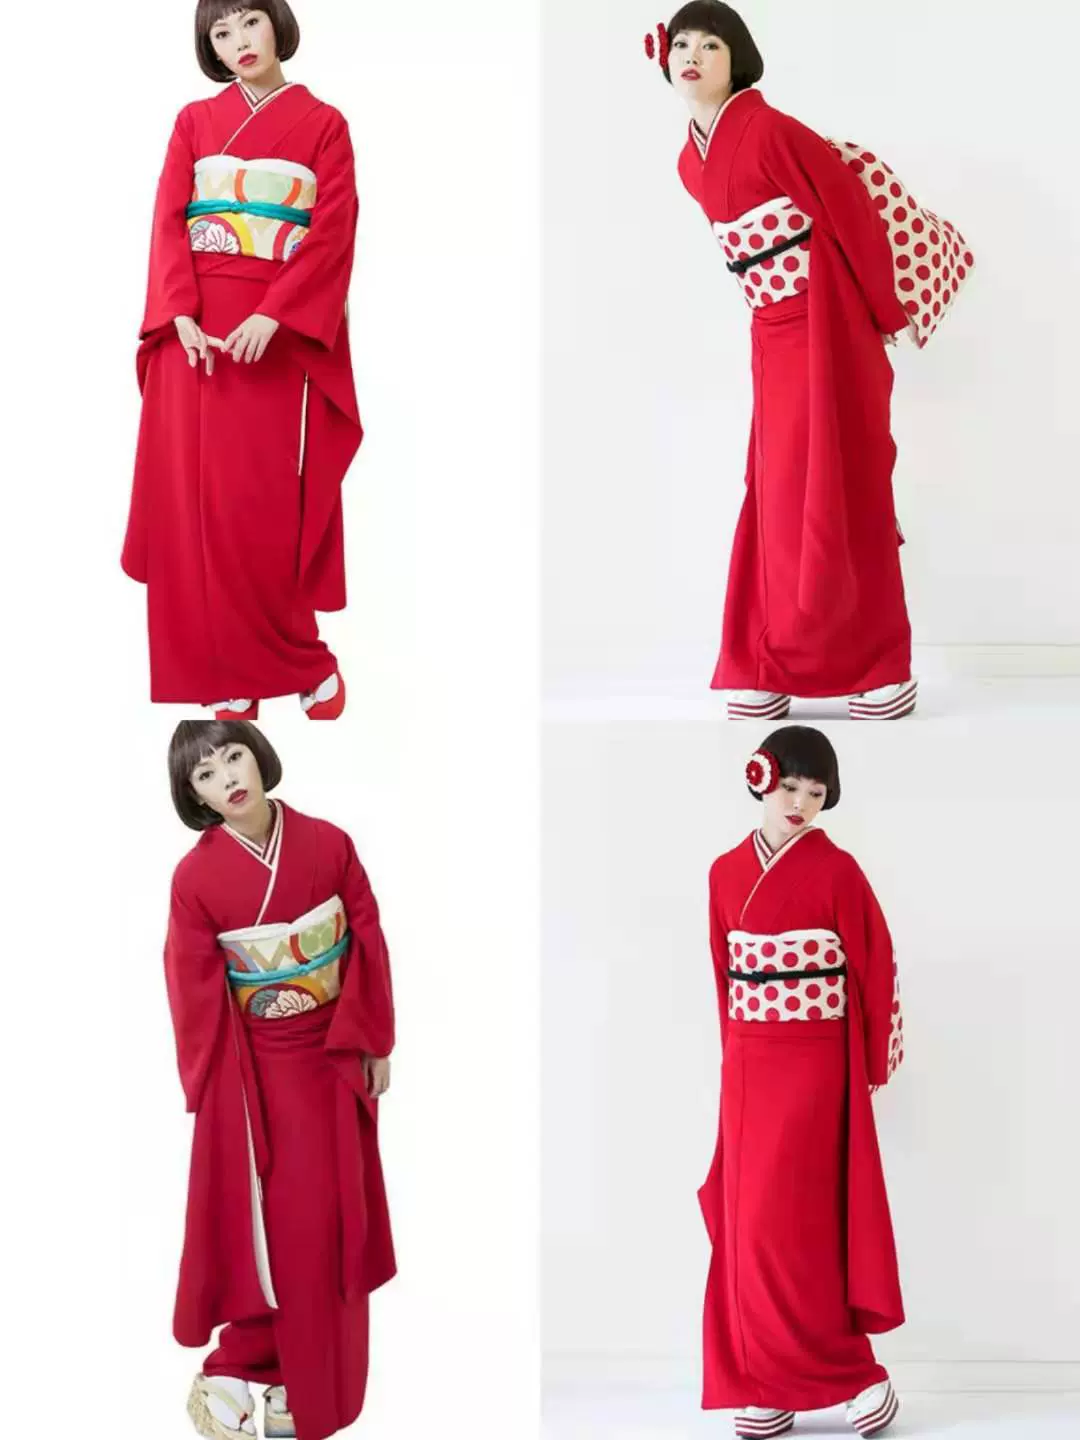 日本傳統正裝色無地小紋振袖着物女士和服正紅色雙層袷衣免熨燙-Taobao